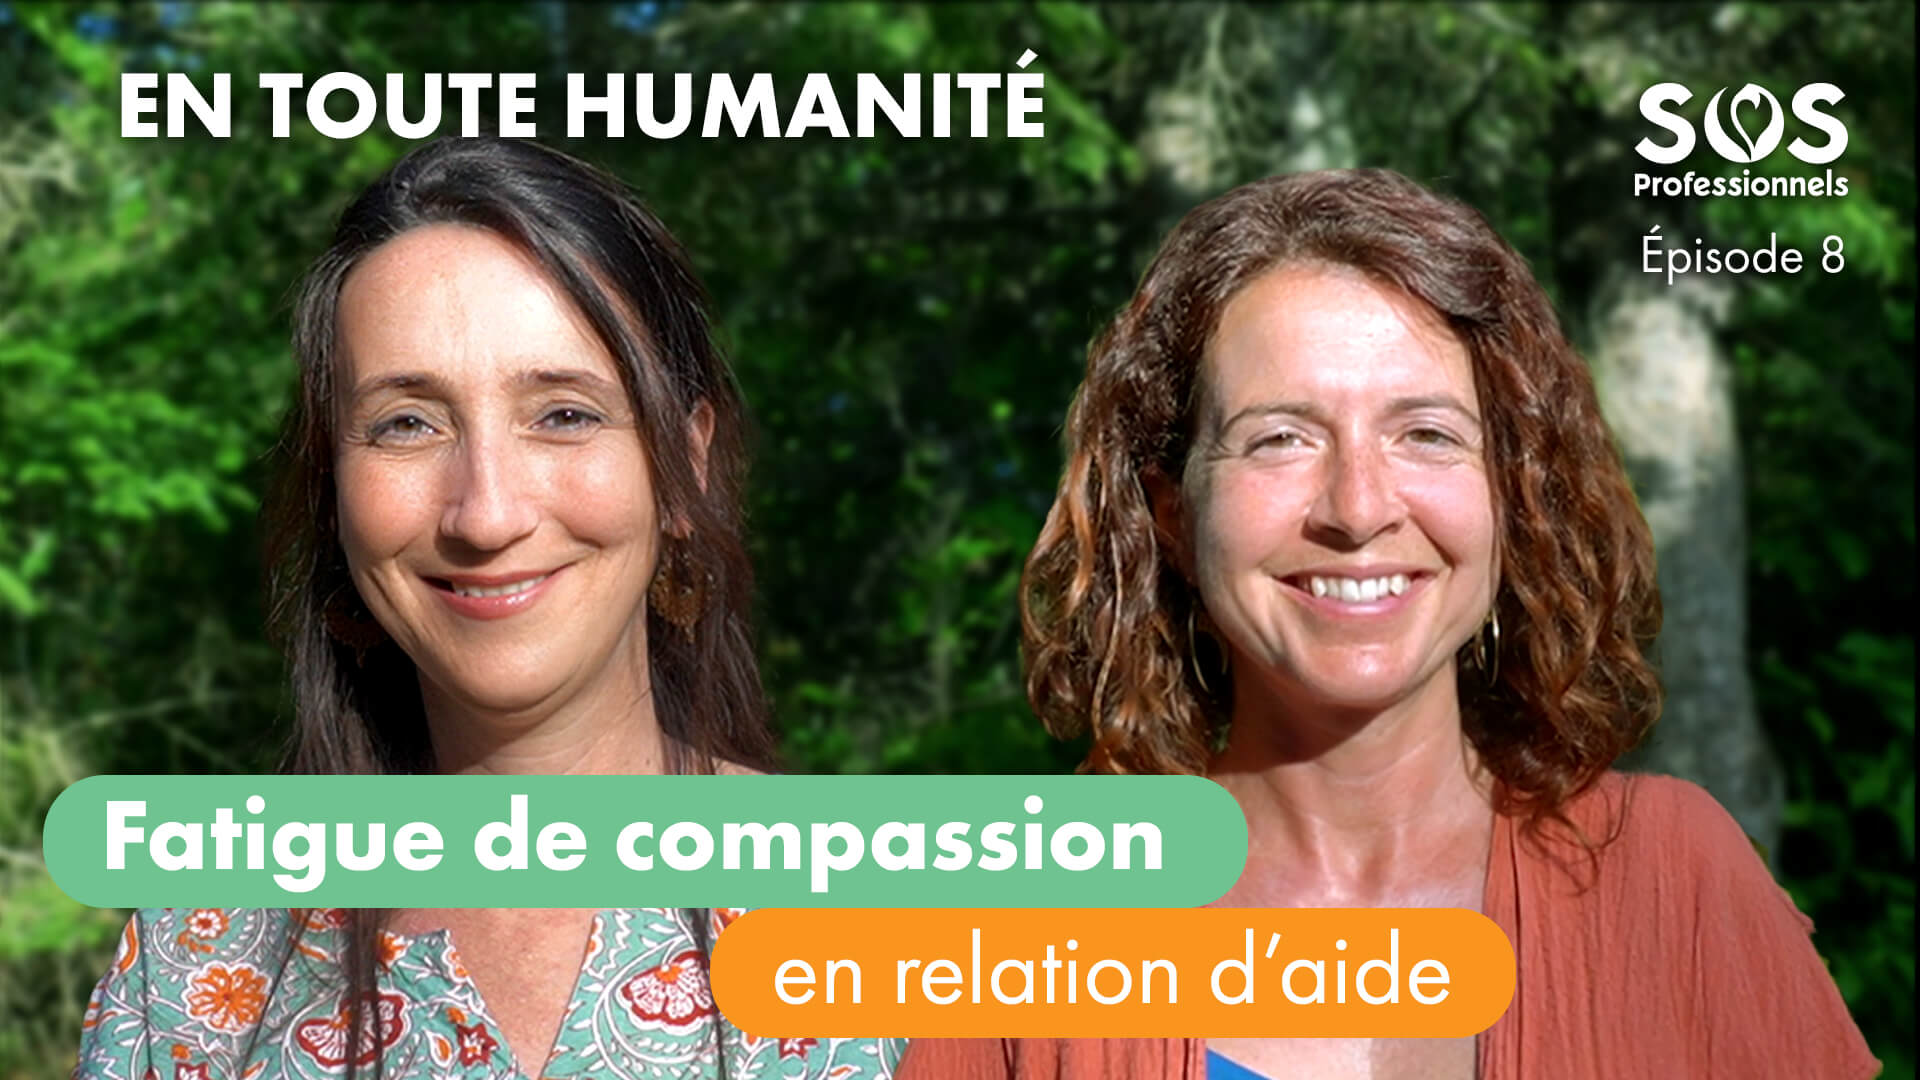 En toute humanité, podcast vidéo Épisode 8. Fatigue de compassion en relation d'aide, par SOS Professionnels